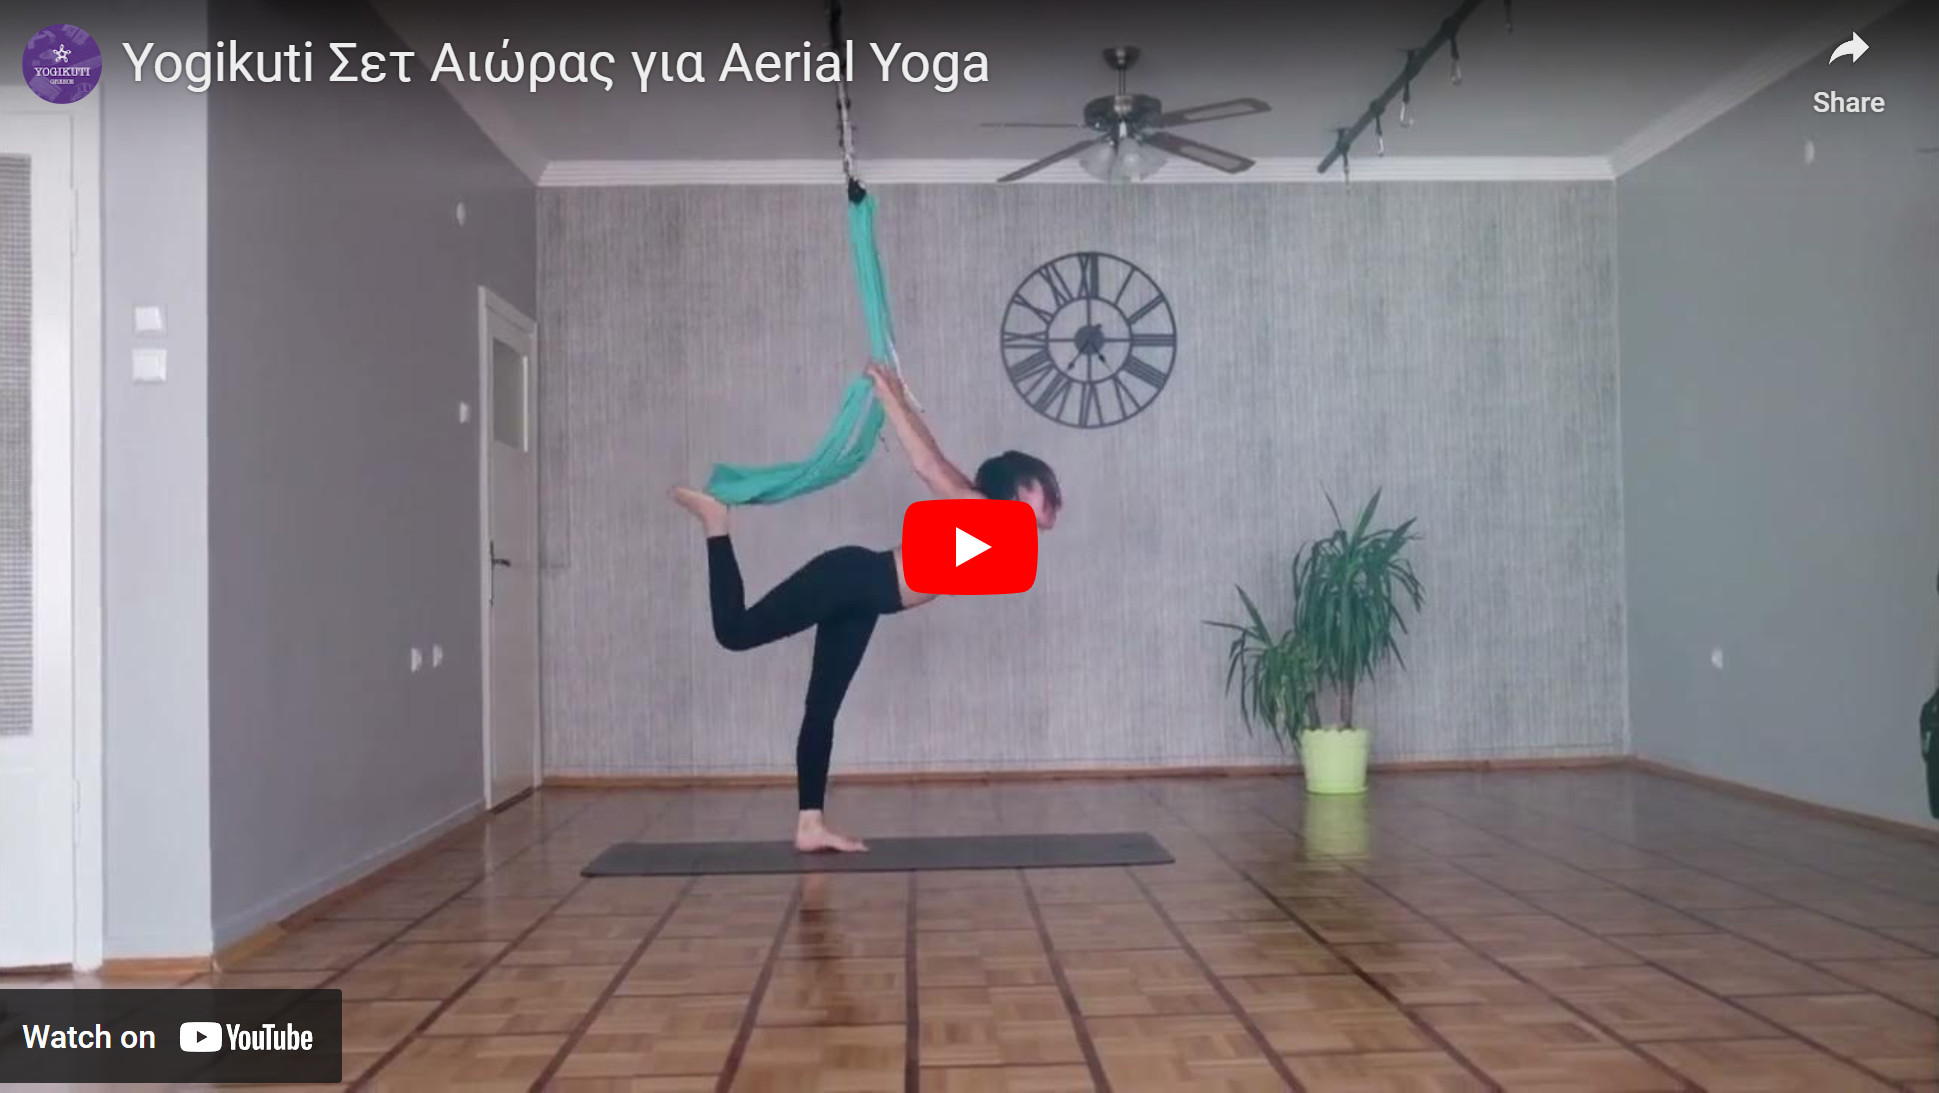 Yoga hammock, yoga swing, aerial yoga, γιόγκα με πανιά, κούνια γιόγκα